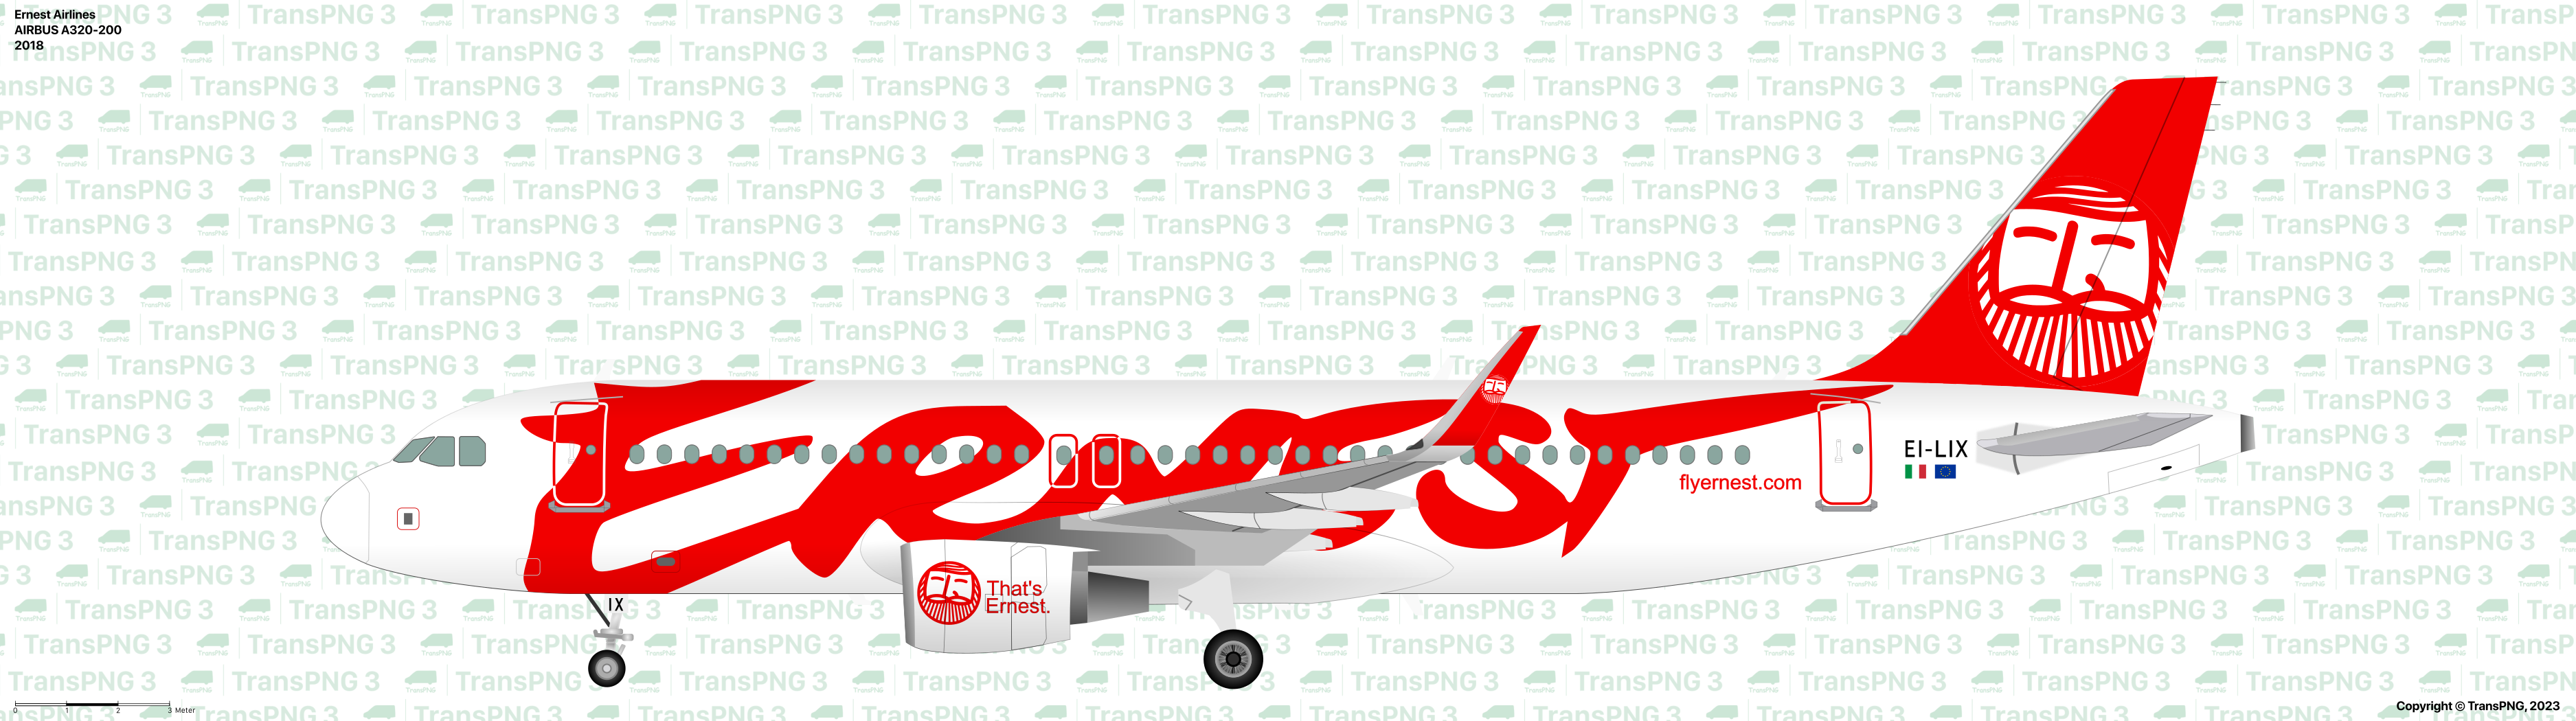 TransPNG.net | 分享世界各地多種交通工具的優秀繪圖 - 客機 53190666638_da2850fc45_o